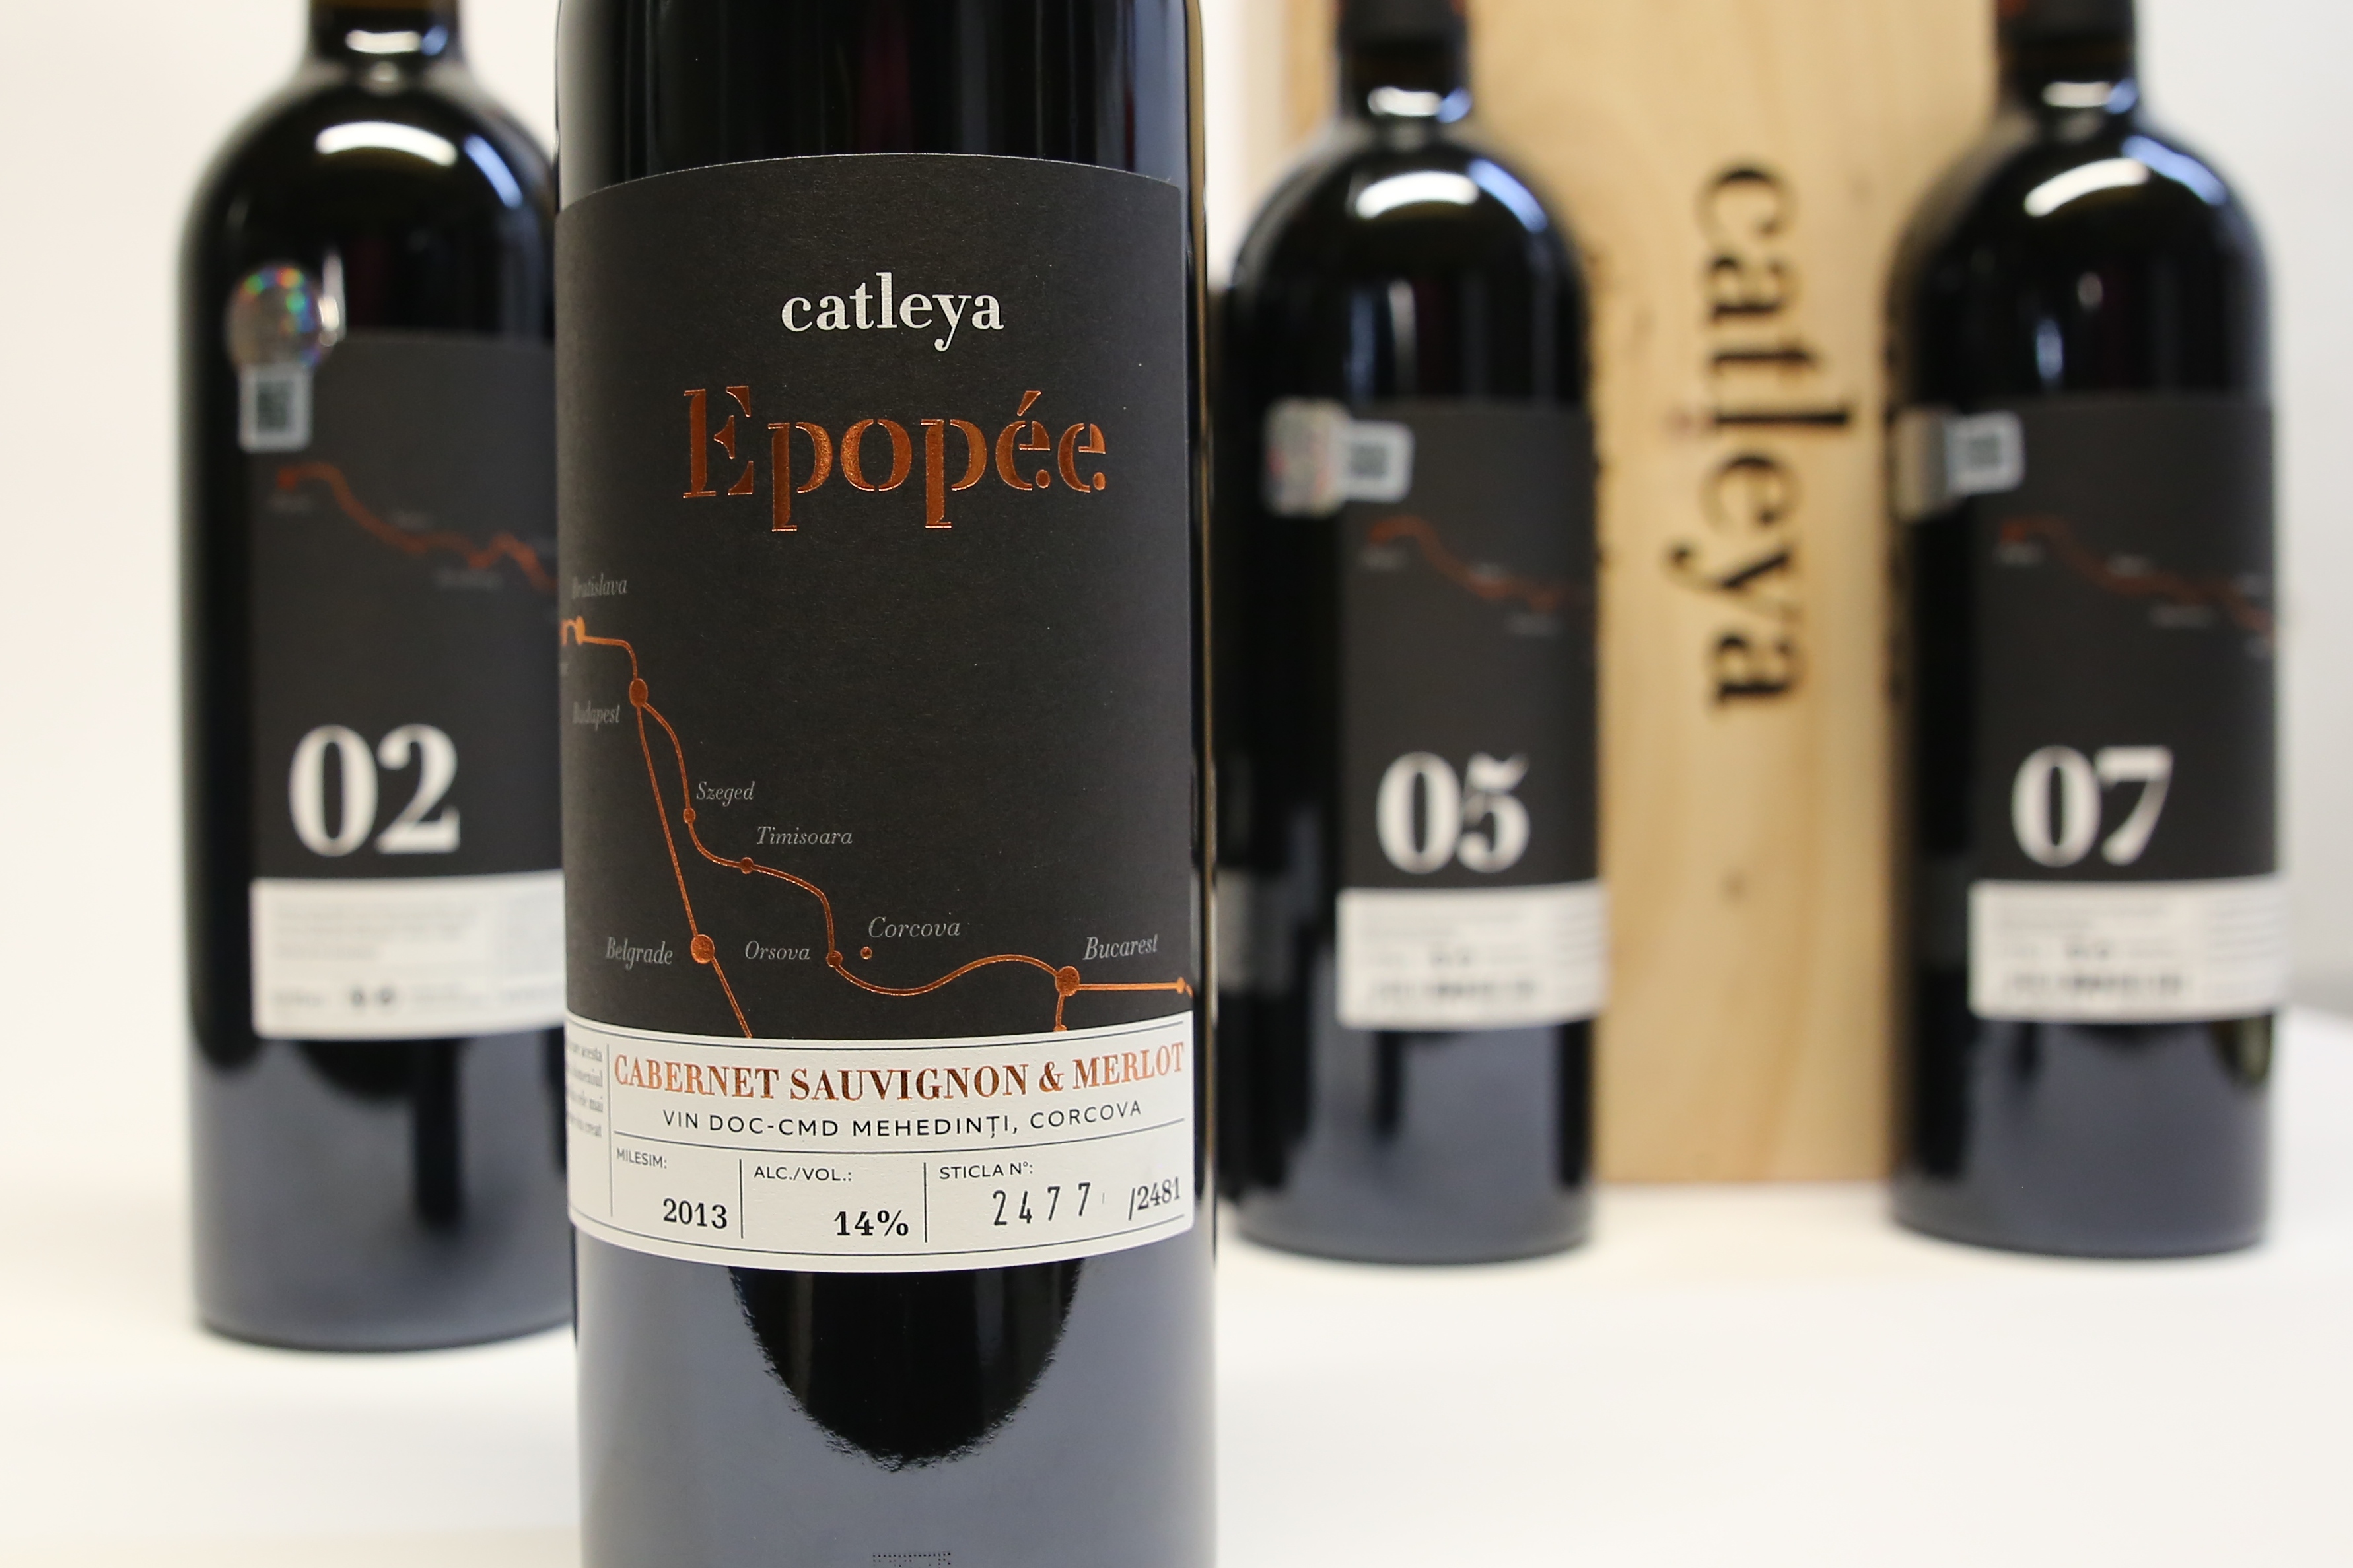 Epopee vin Catleya (1)